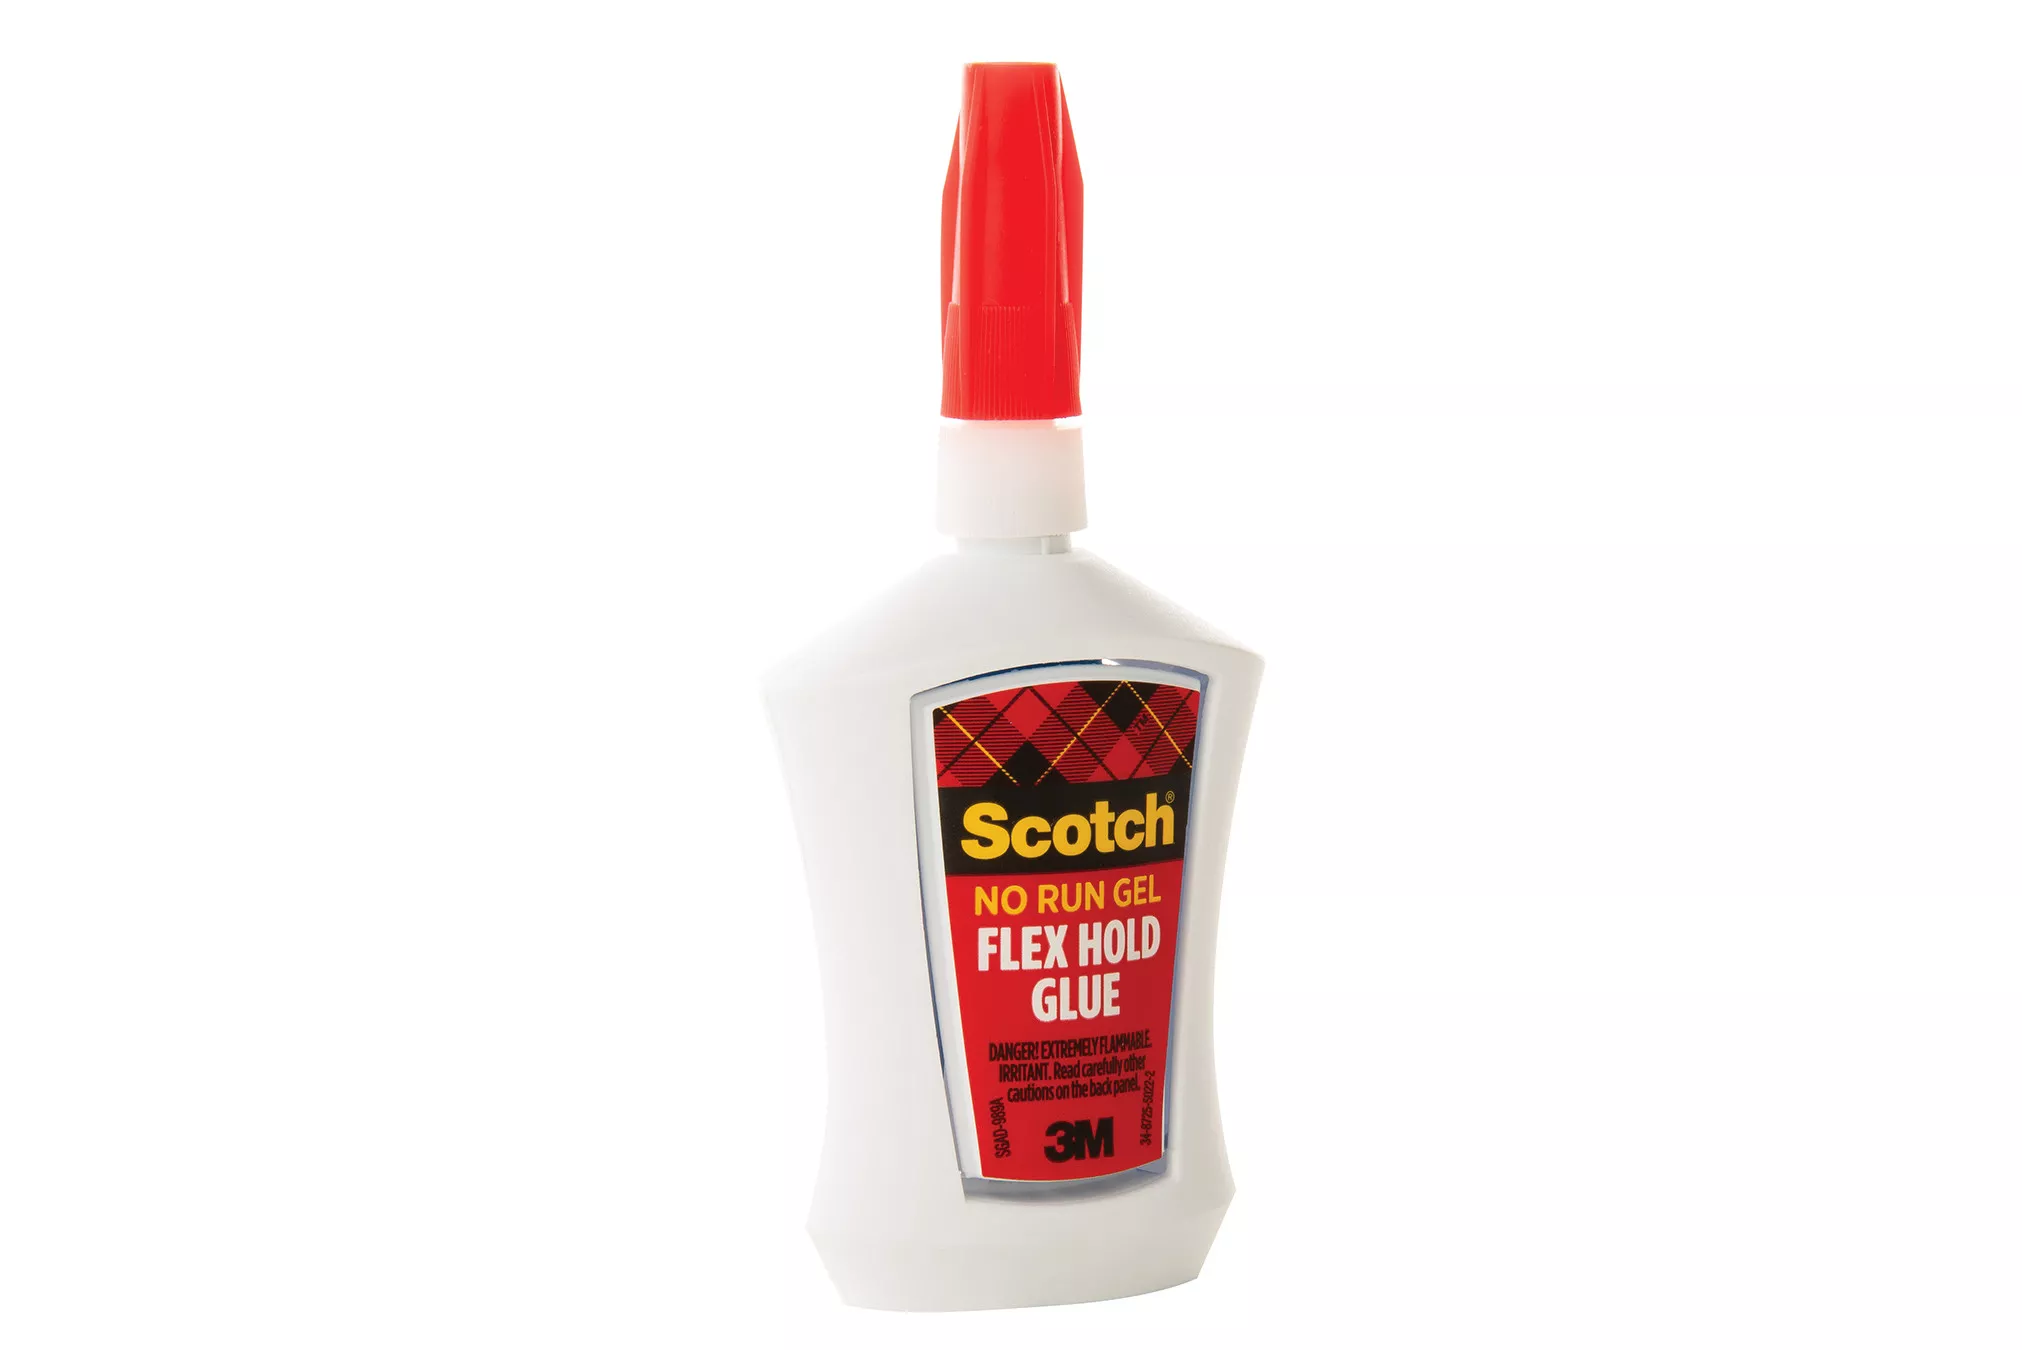 SKU 7010290878 | Scotch® Flex Hold Glue in Precision Applicator ADH670